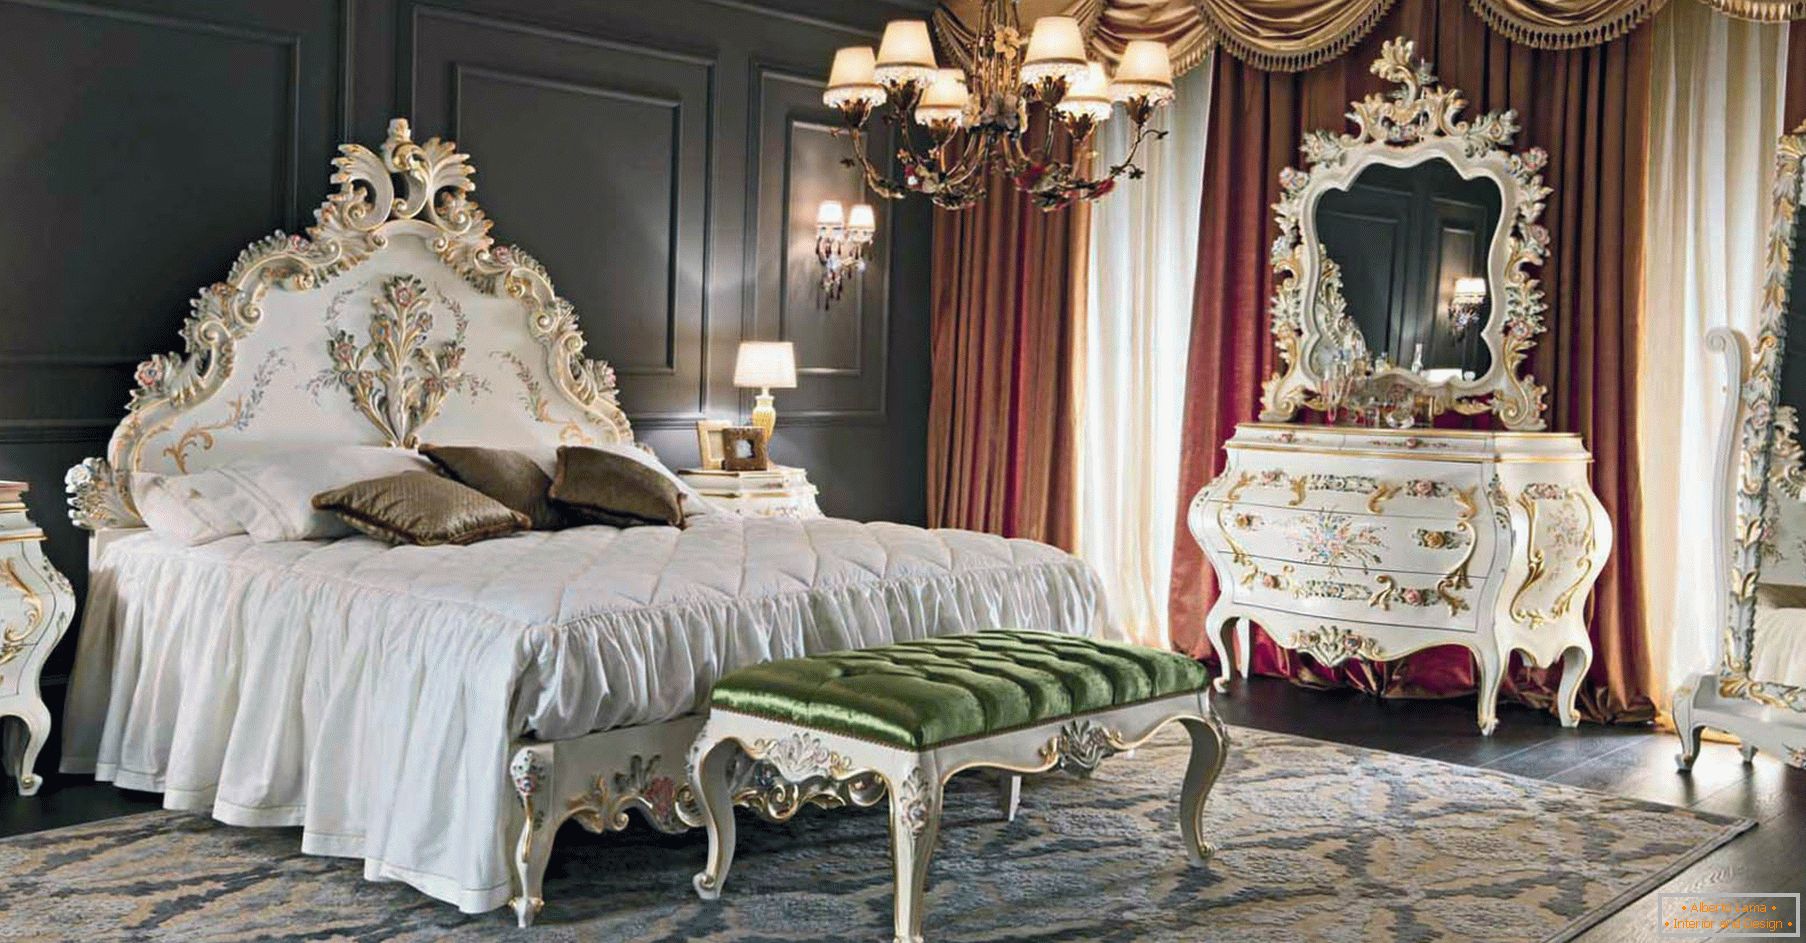 За декорацију спаваће собе користи се контраст тамно браон, златне, црвене и беле боје. Намештај је одабран према стилу барока.